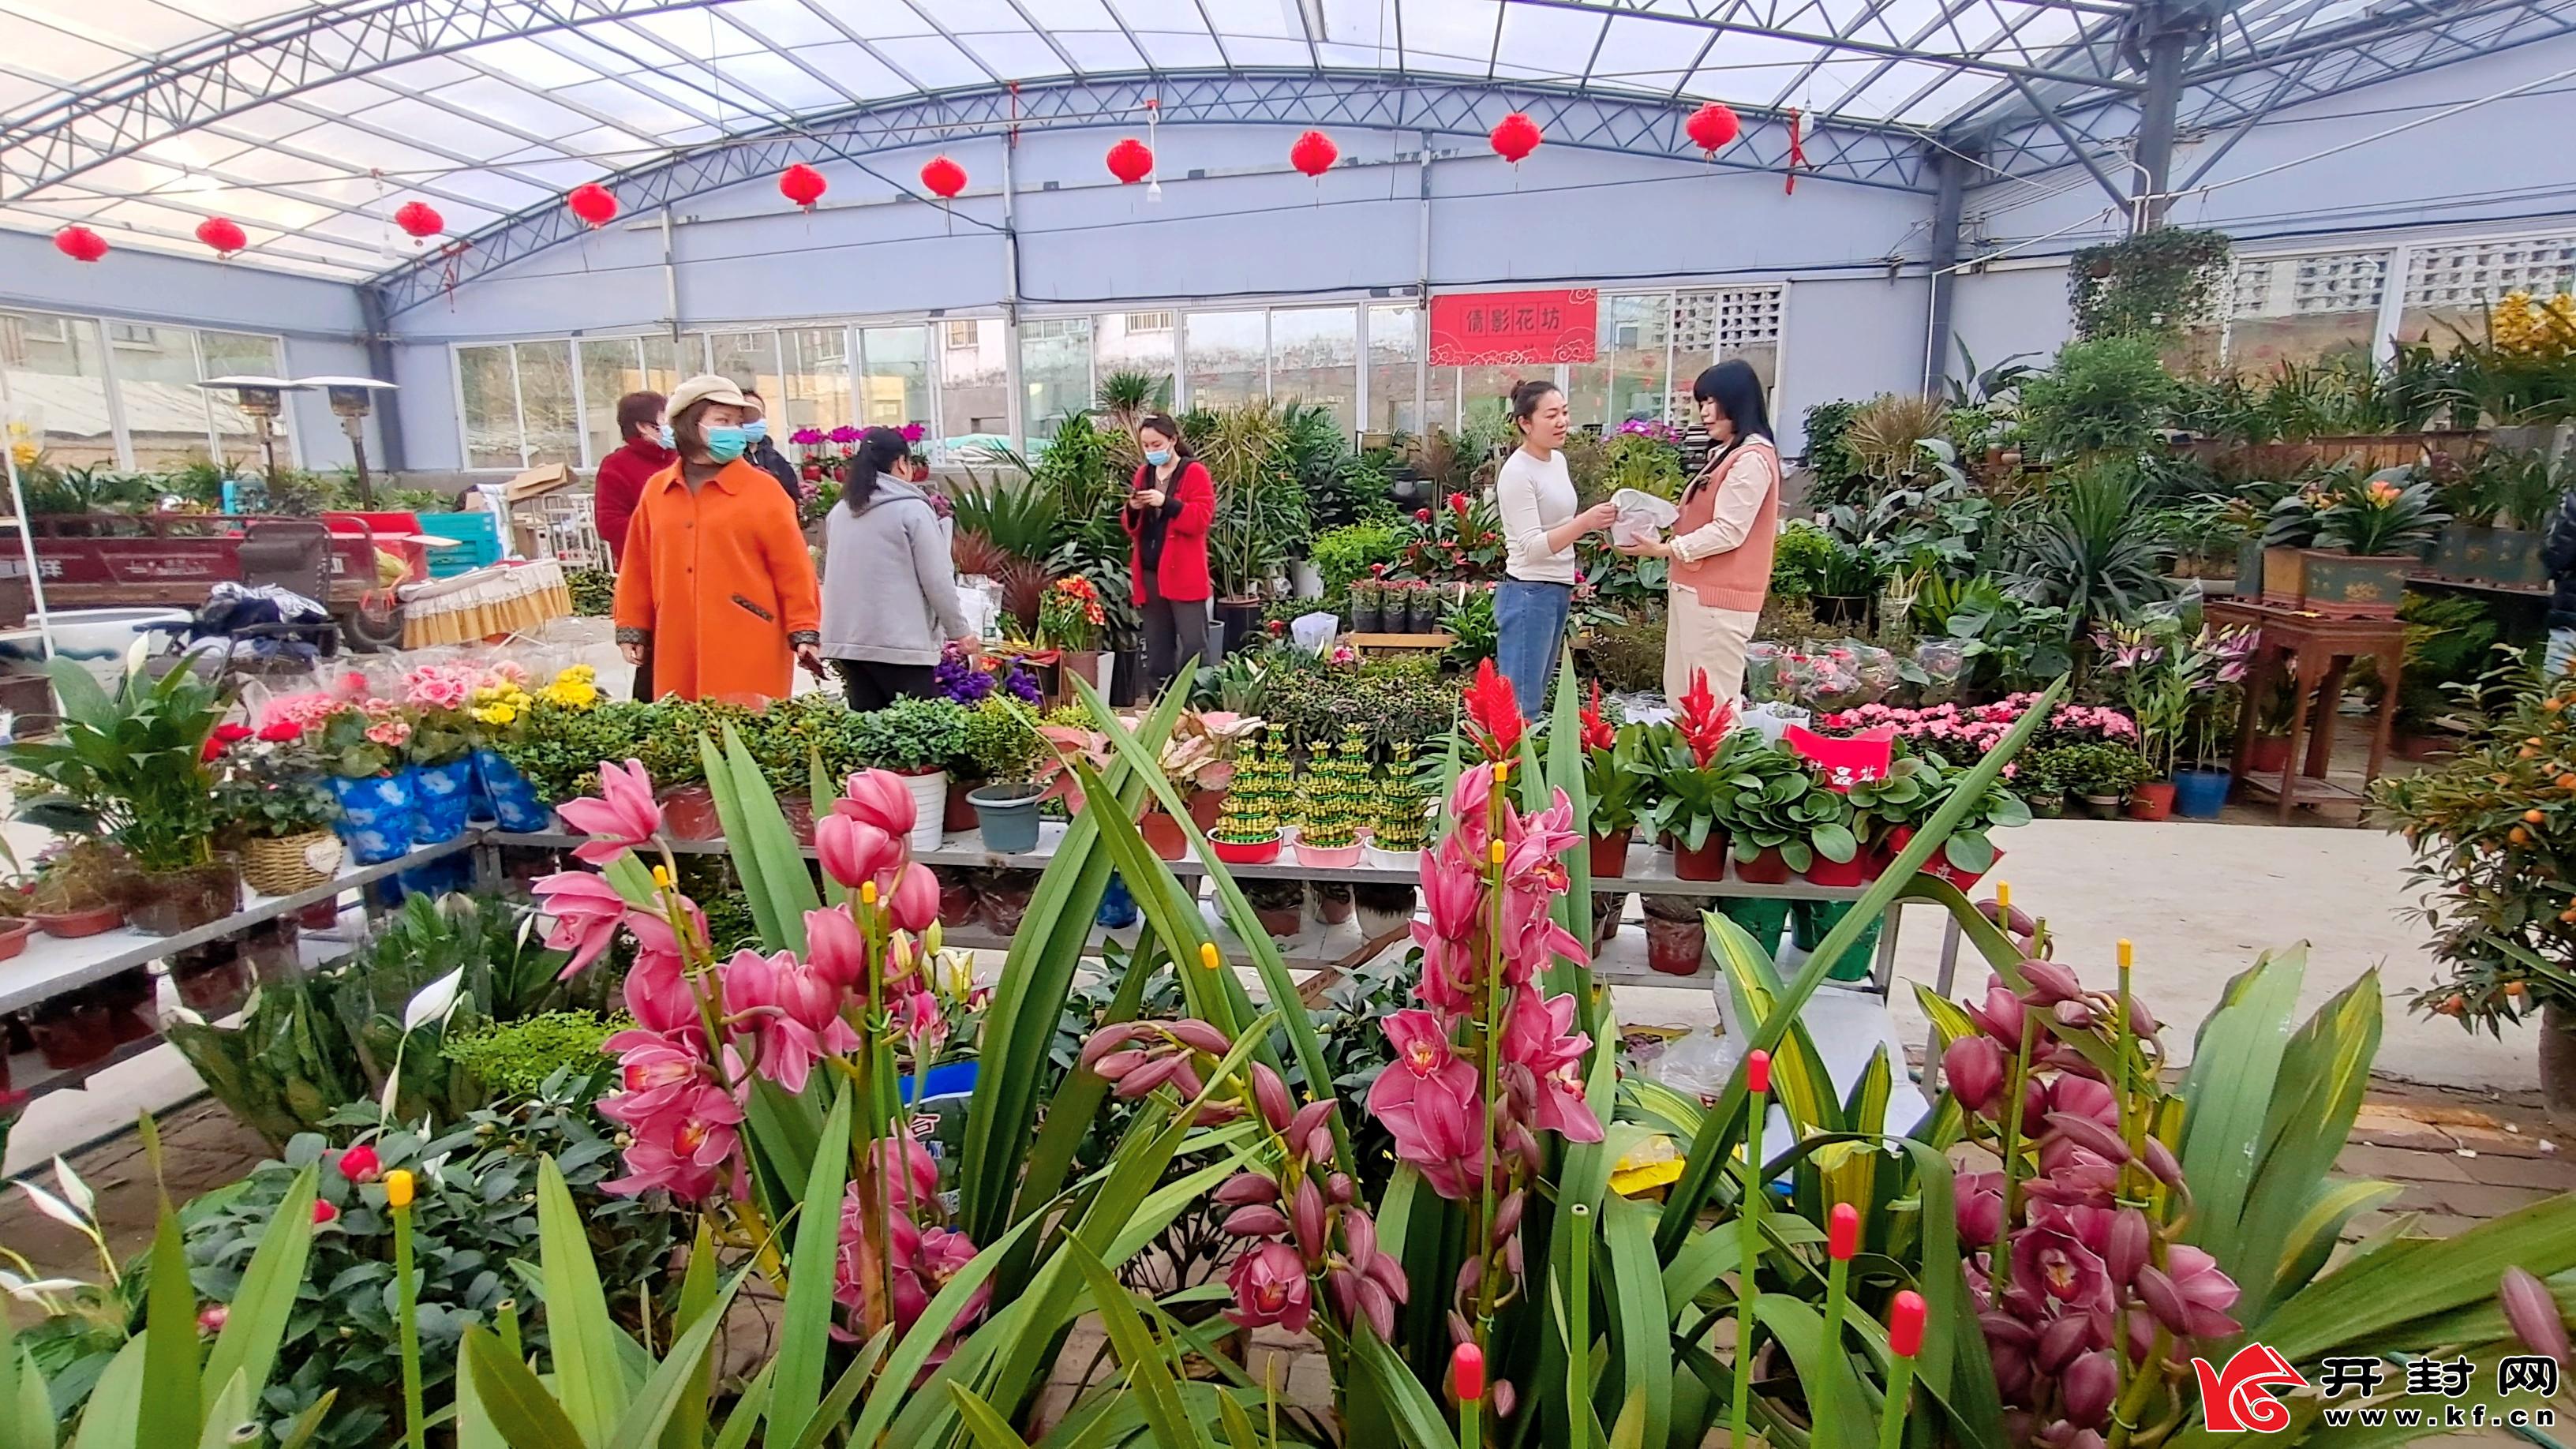 2月5日,开封一花卉市场内热闹非凡,市民购买鲜花盆栽迎接新春到来